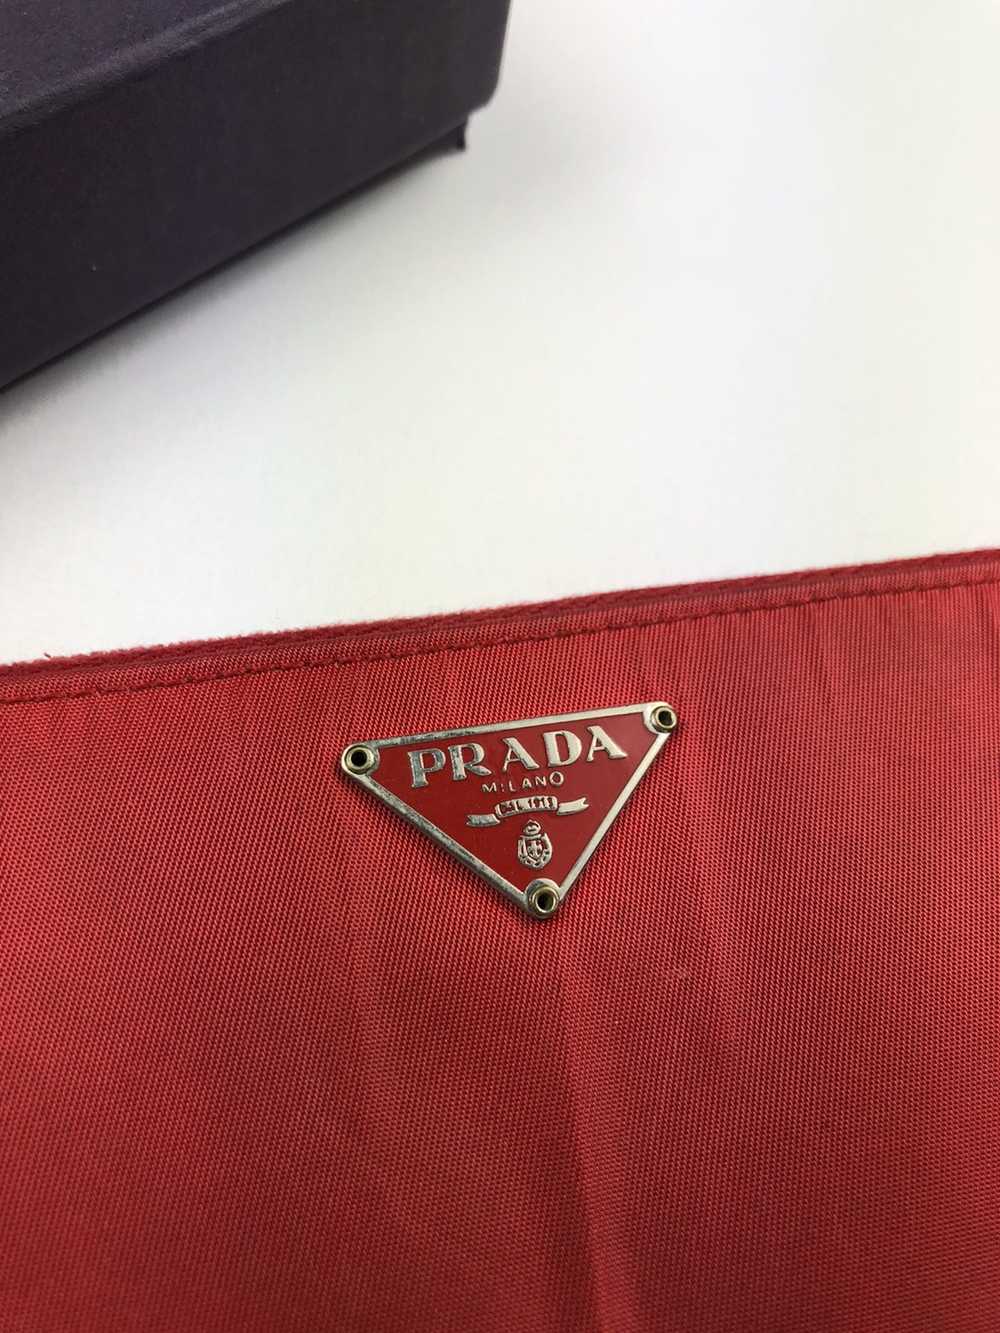 Prada Prada tessuto red nylon zippy wallet - image 2